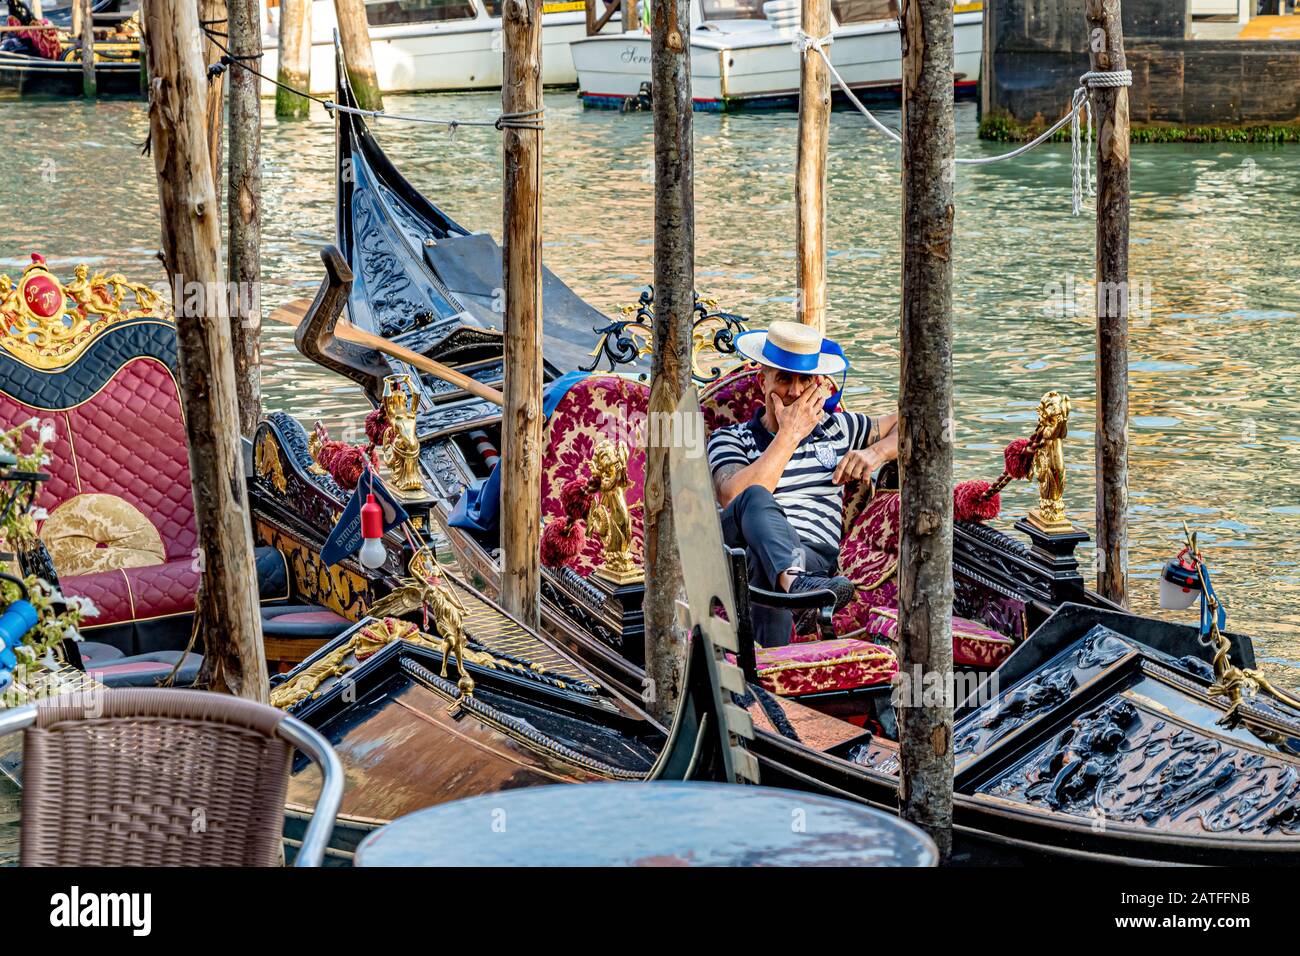 Un Gondolier prenant un repos, assis dans sa télécabine sur le Grand Canal, Venise, Italie Banque D'Images